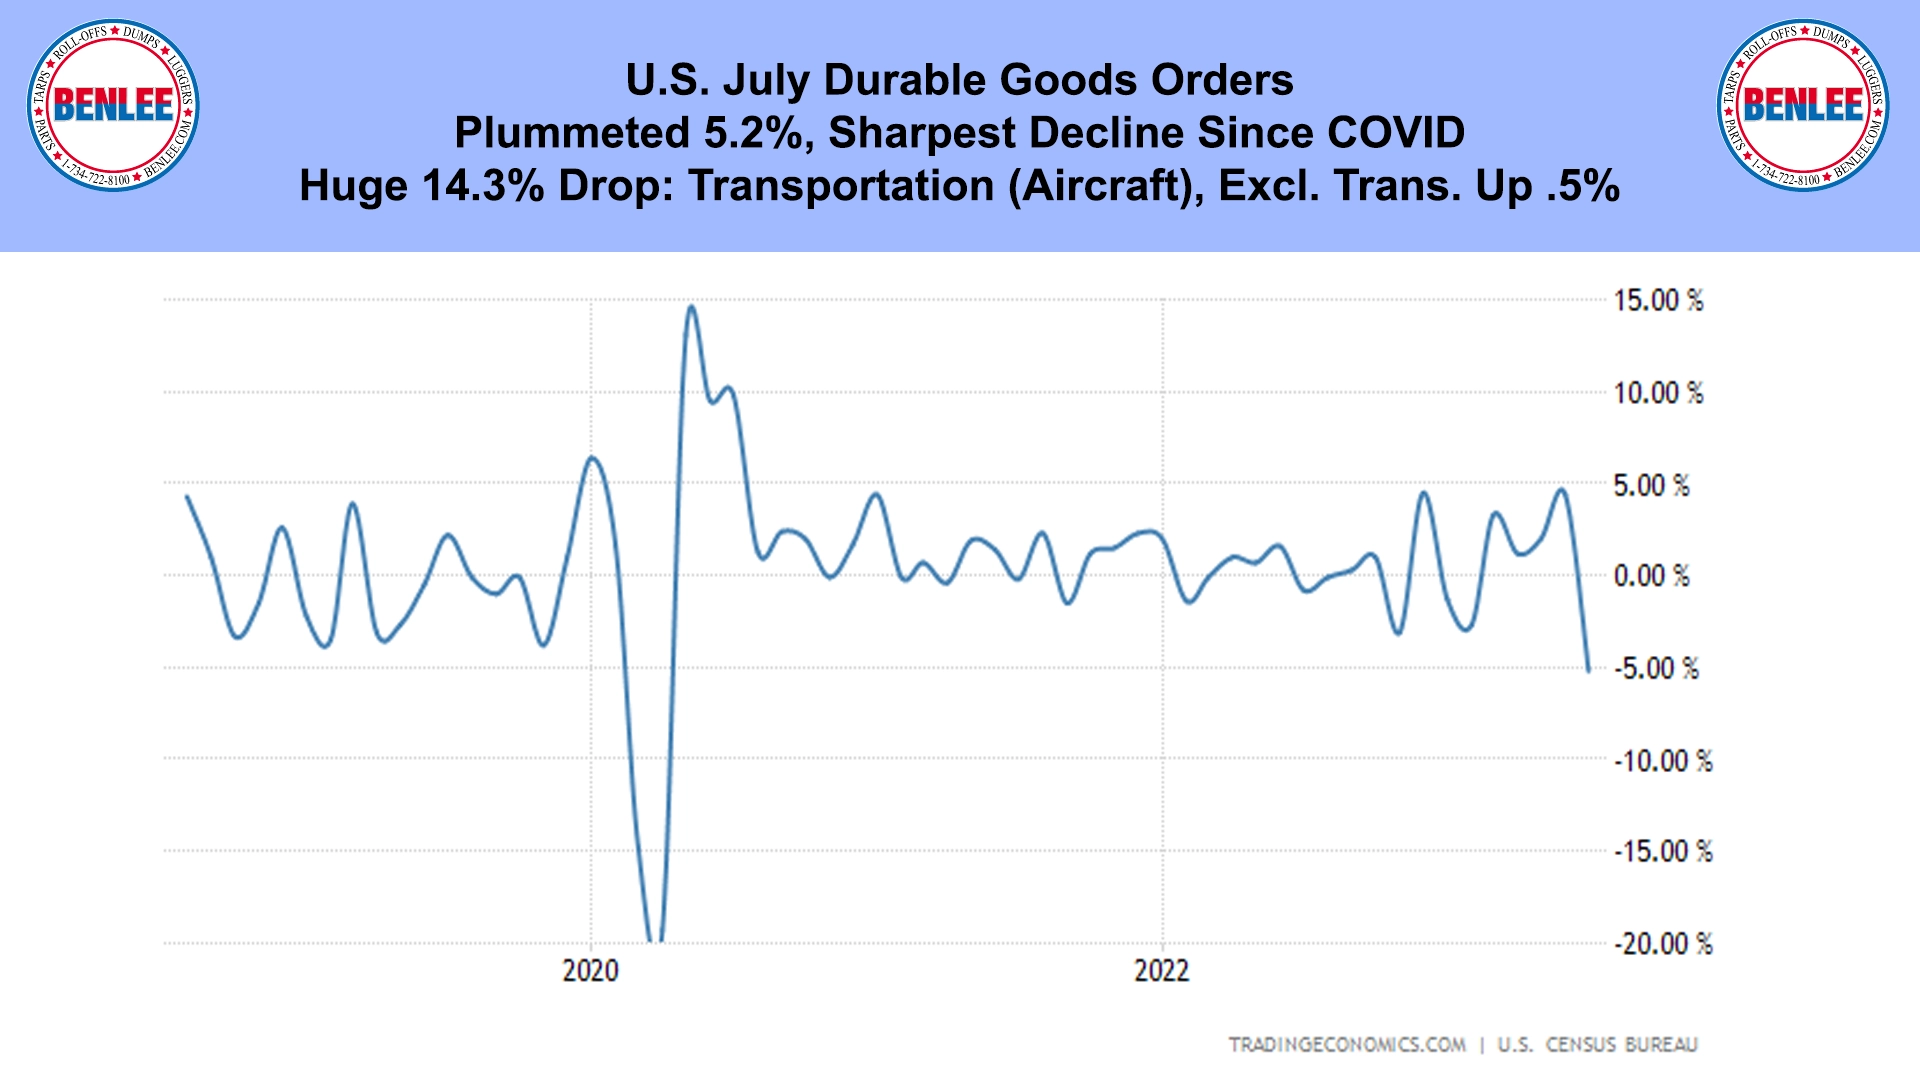 U.S. July Durable Goods Orders